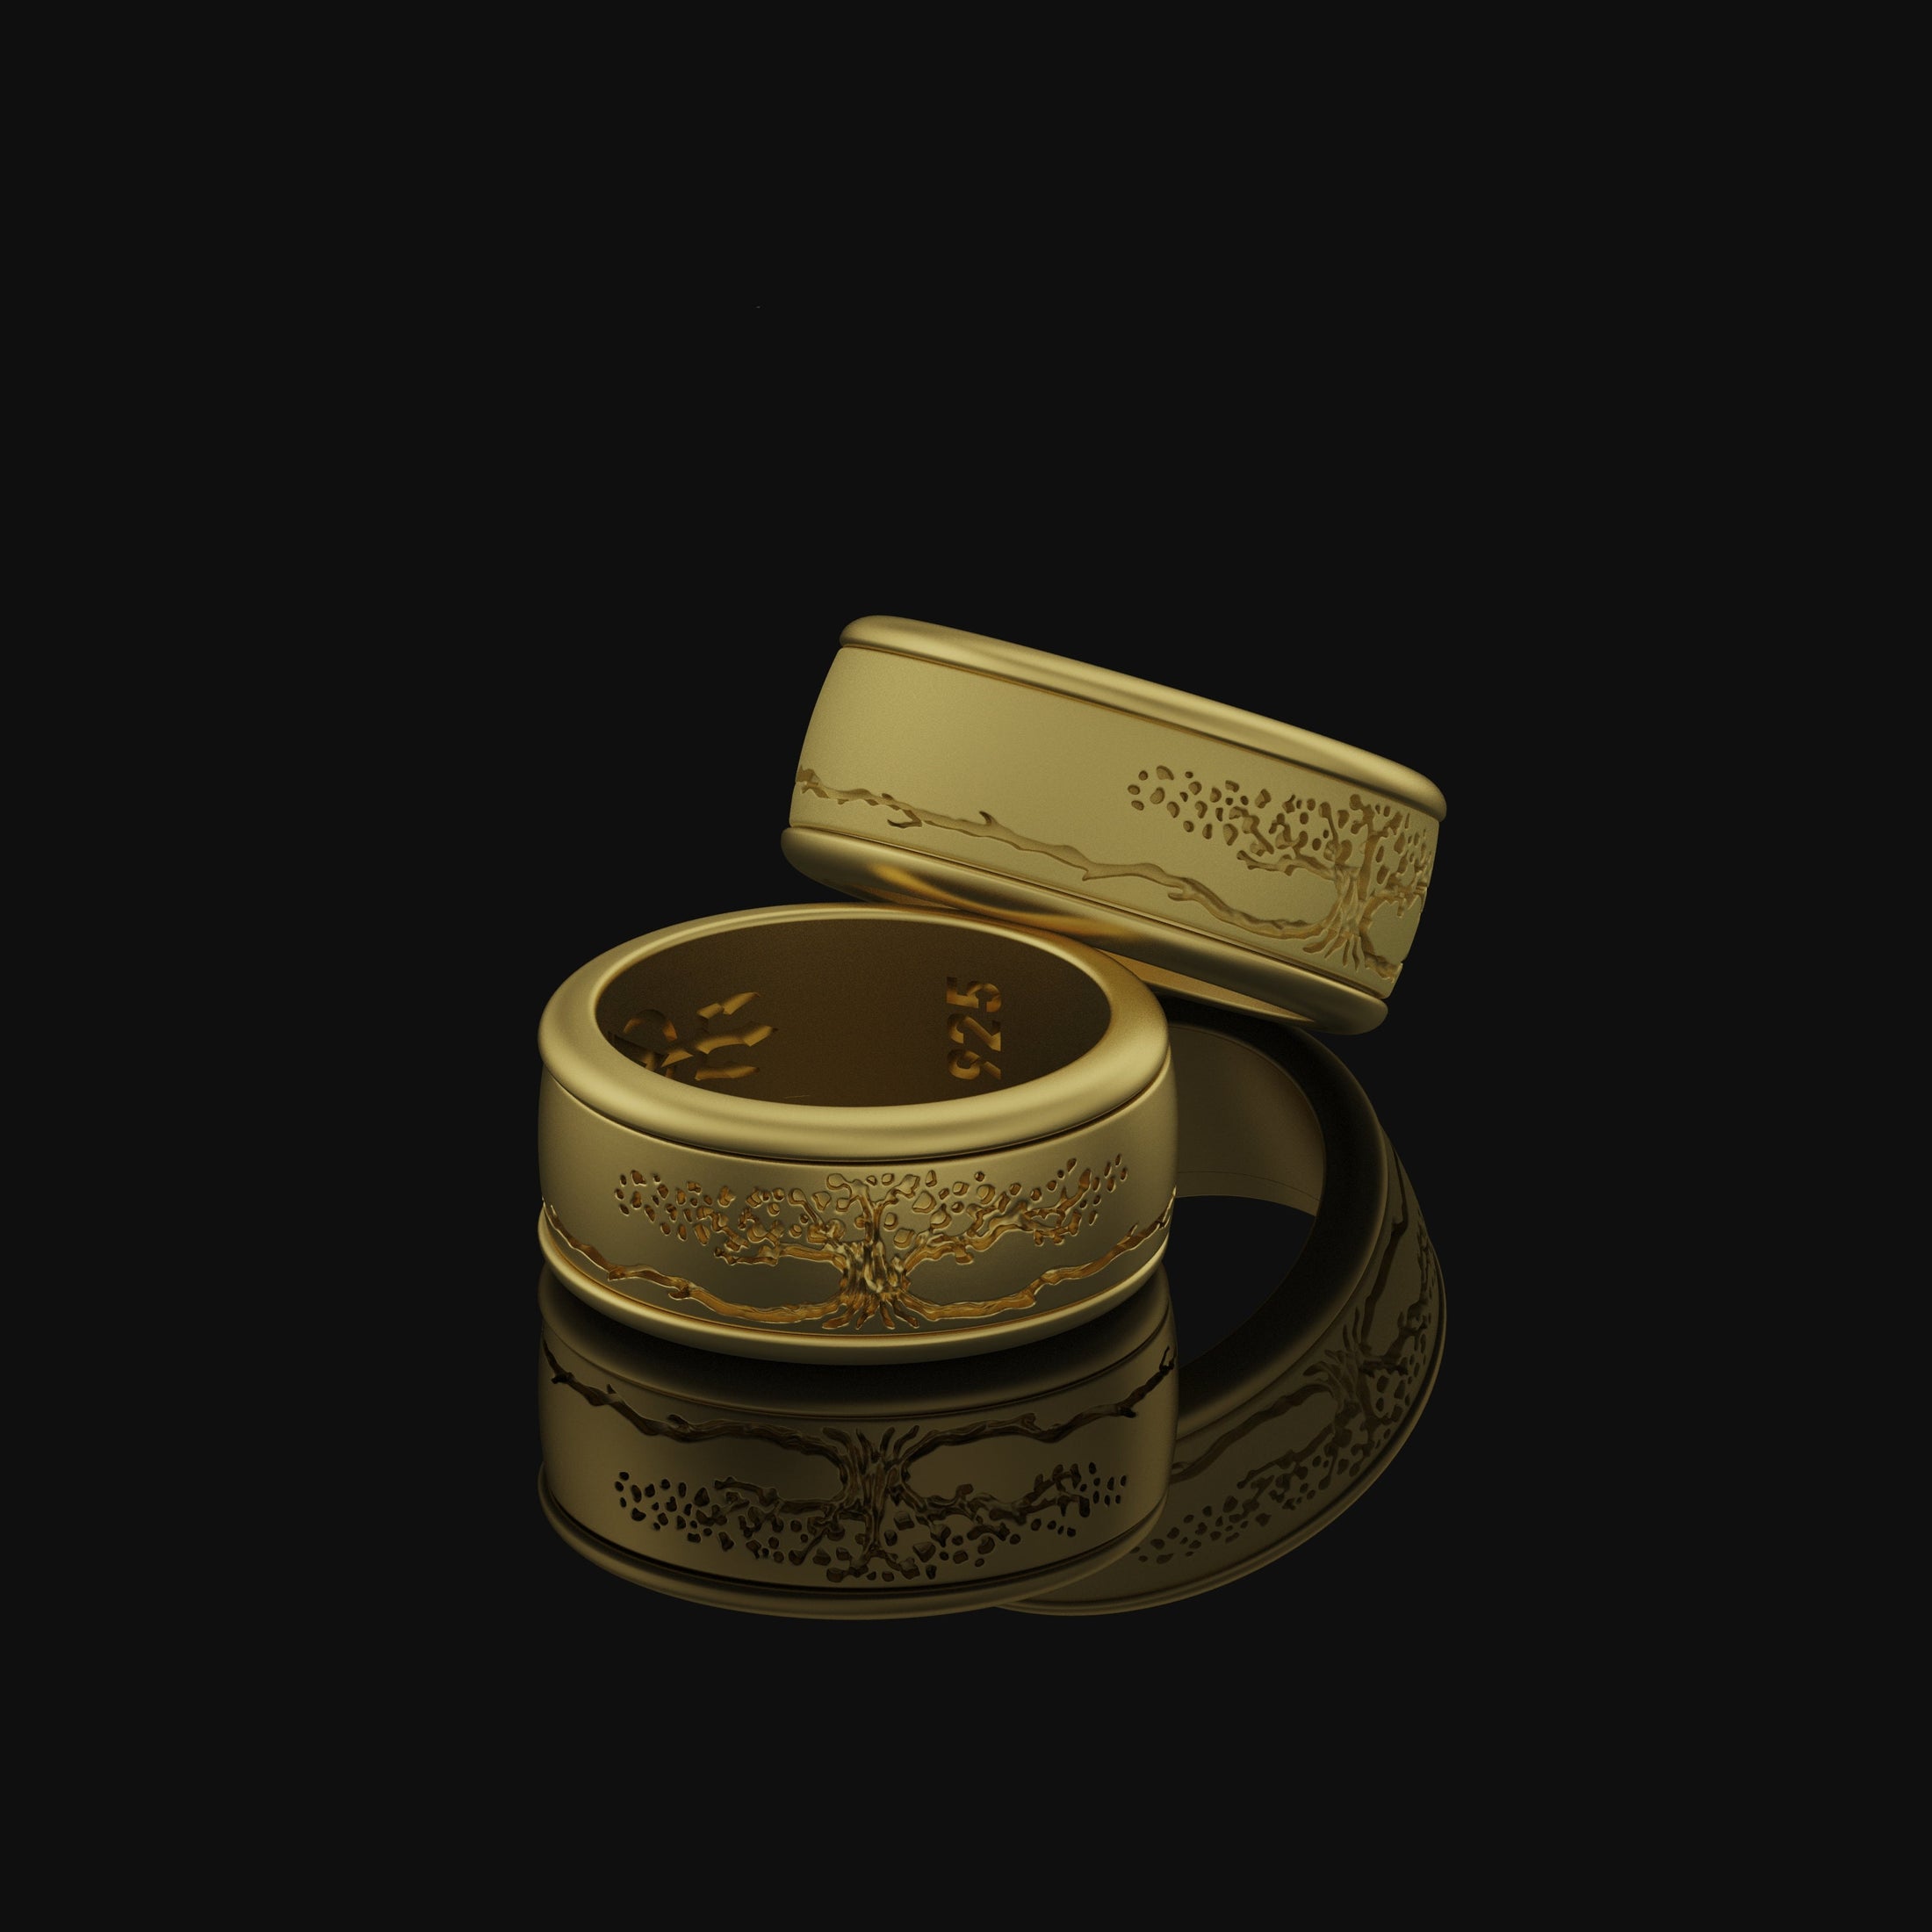 Rotating Yggdrasil Band - Engravable Gold Finish